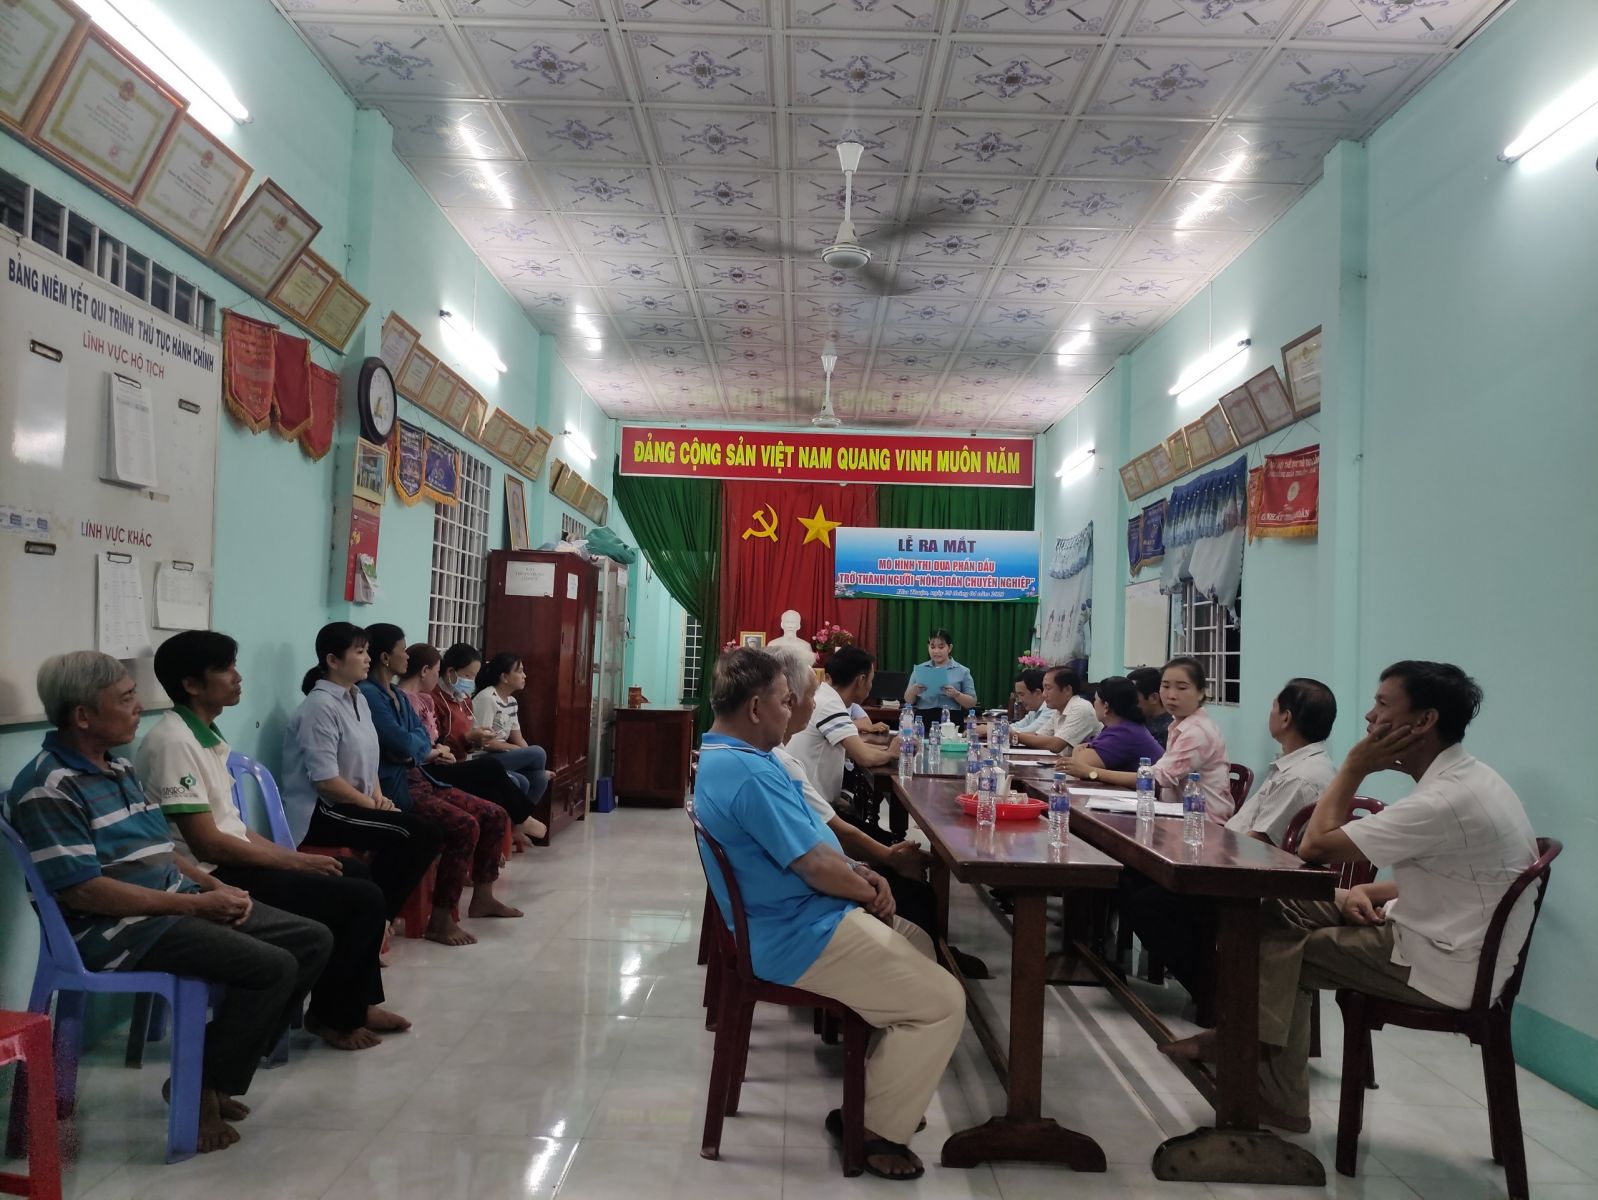 Phường Hoà Thuận tổ chức lễ ra mắt mô hình thi đua phấn đấu trở thành  “Người nông dân chuyên nghiệp”